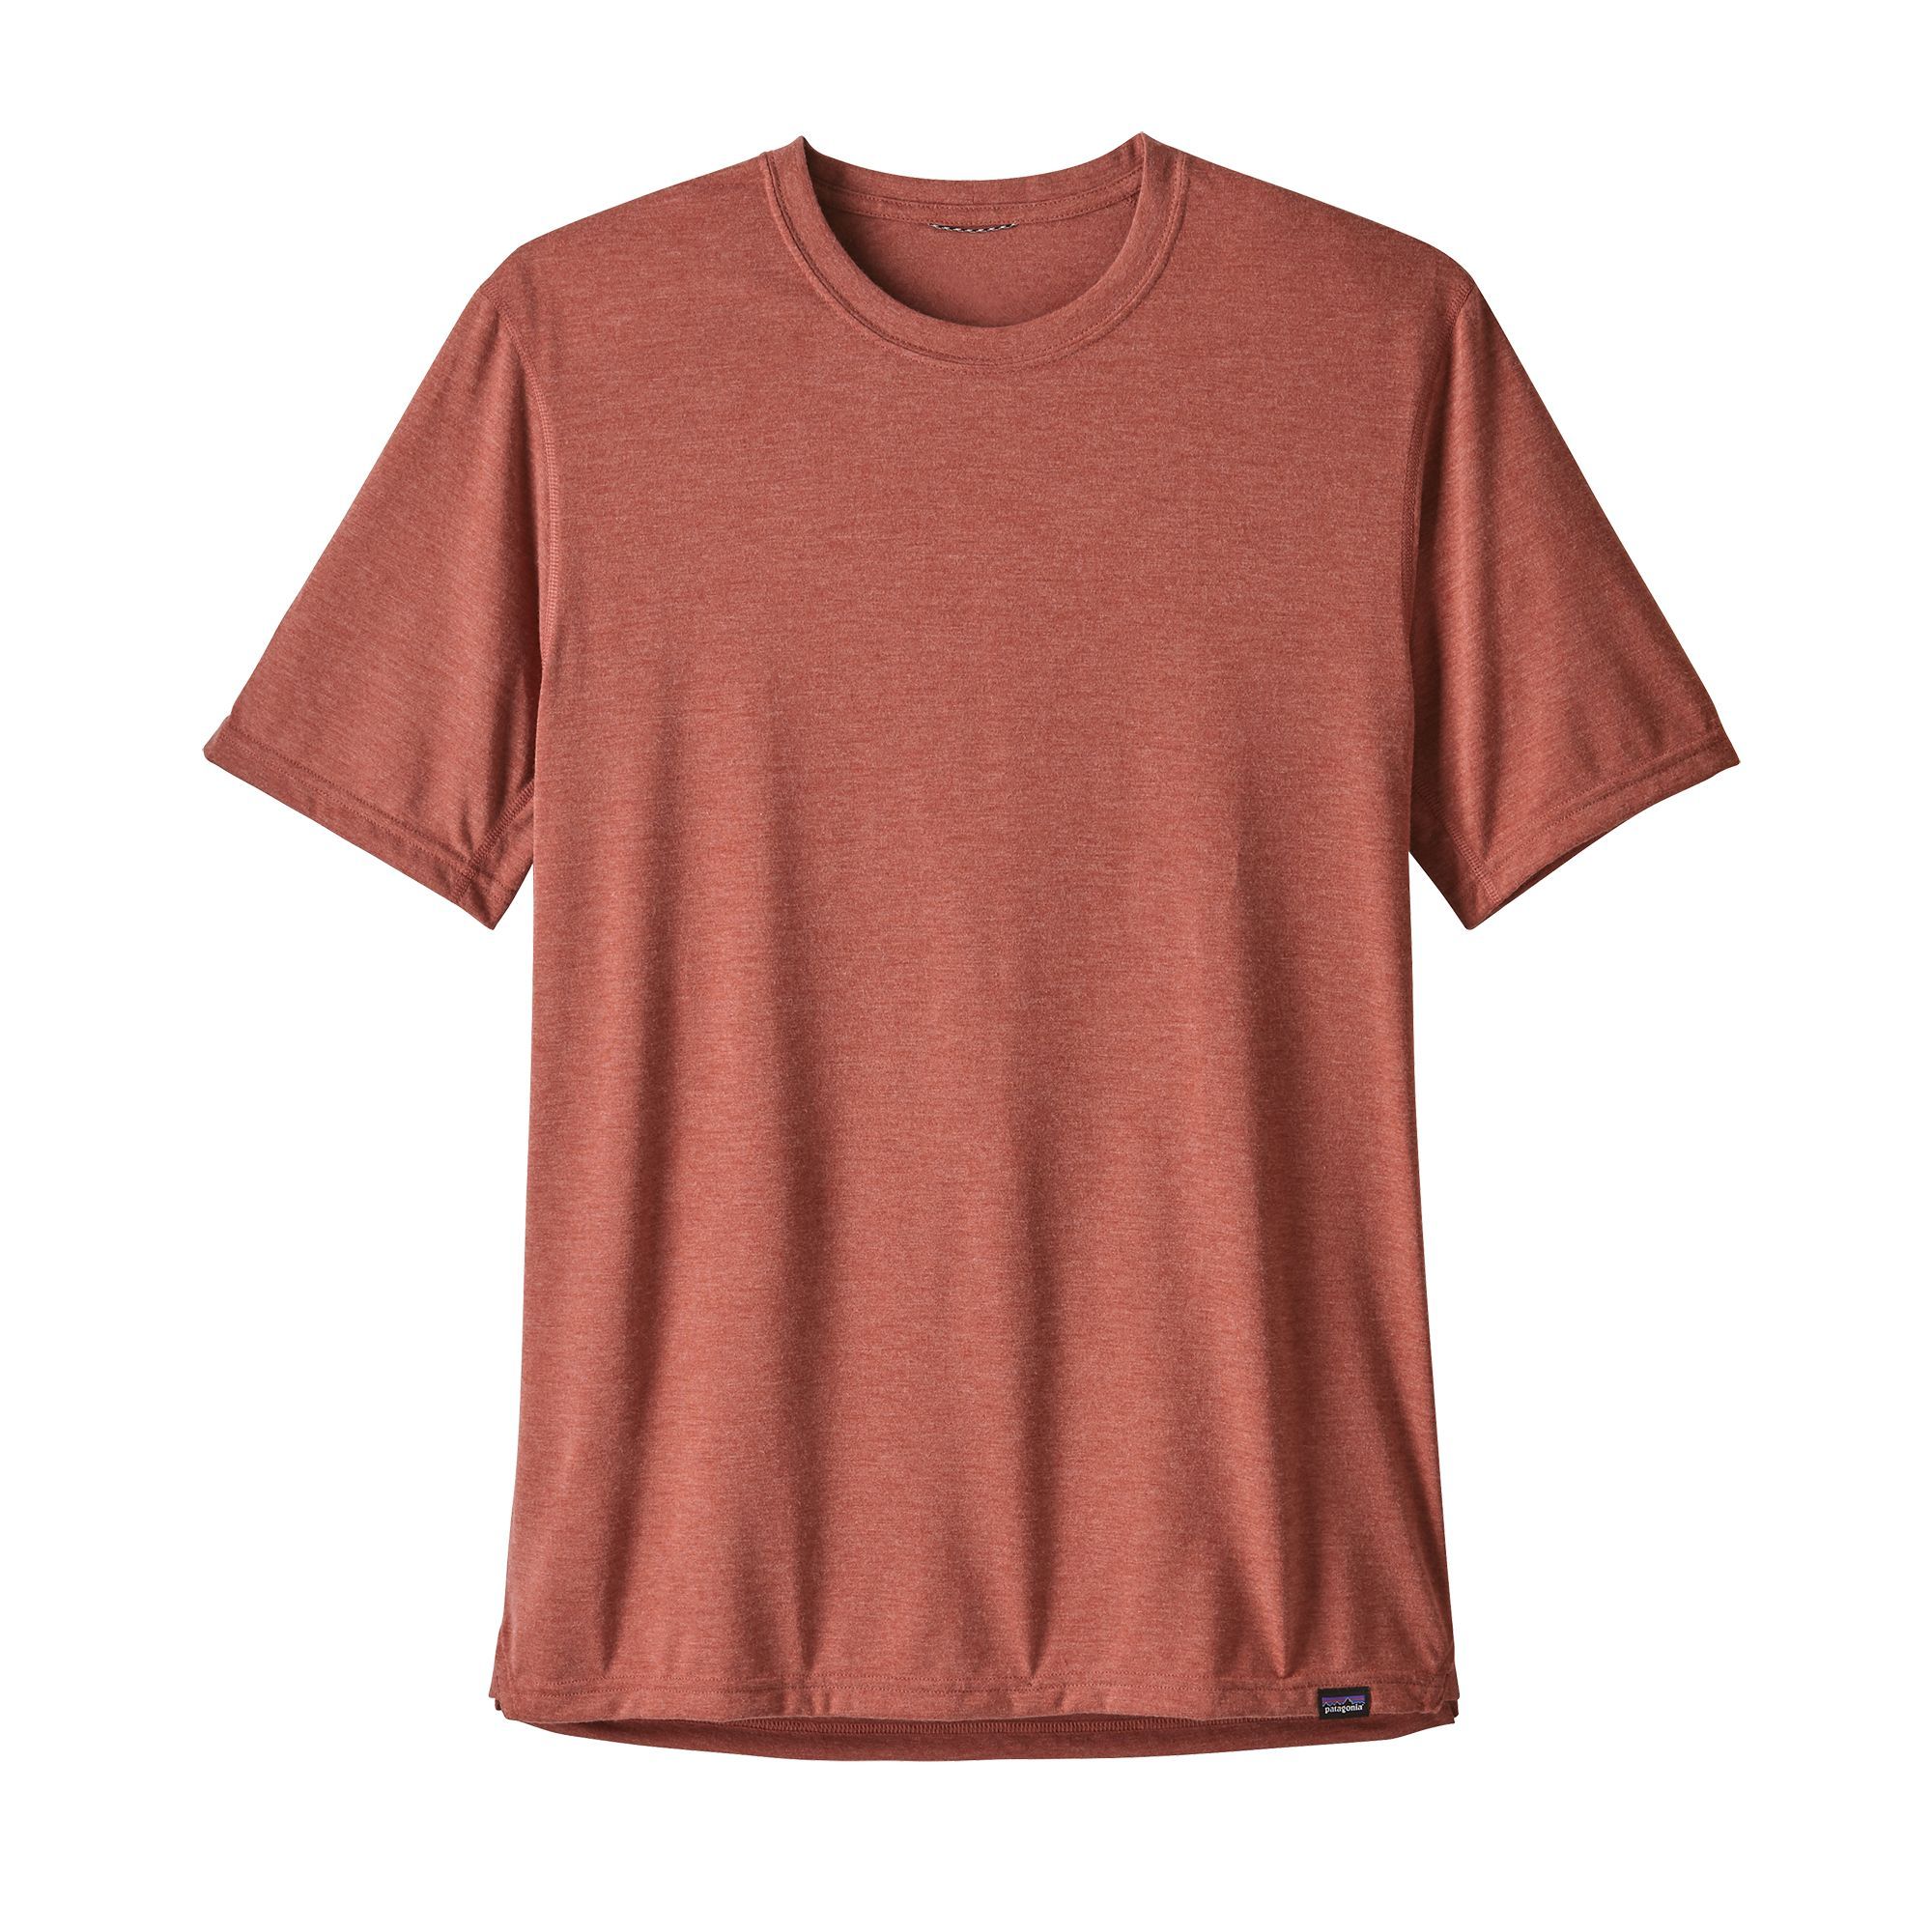 T-shirt Men's Capilene® Cool Trail Shirt -New Adobe